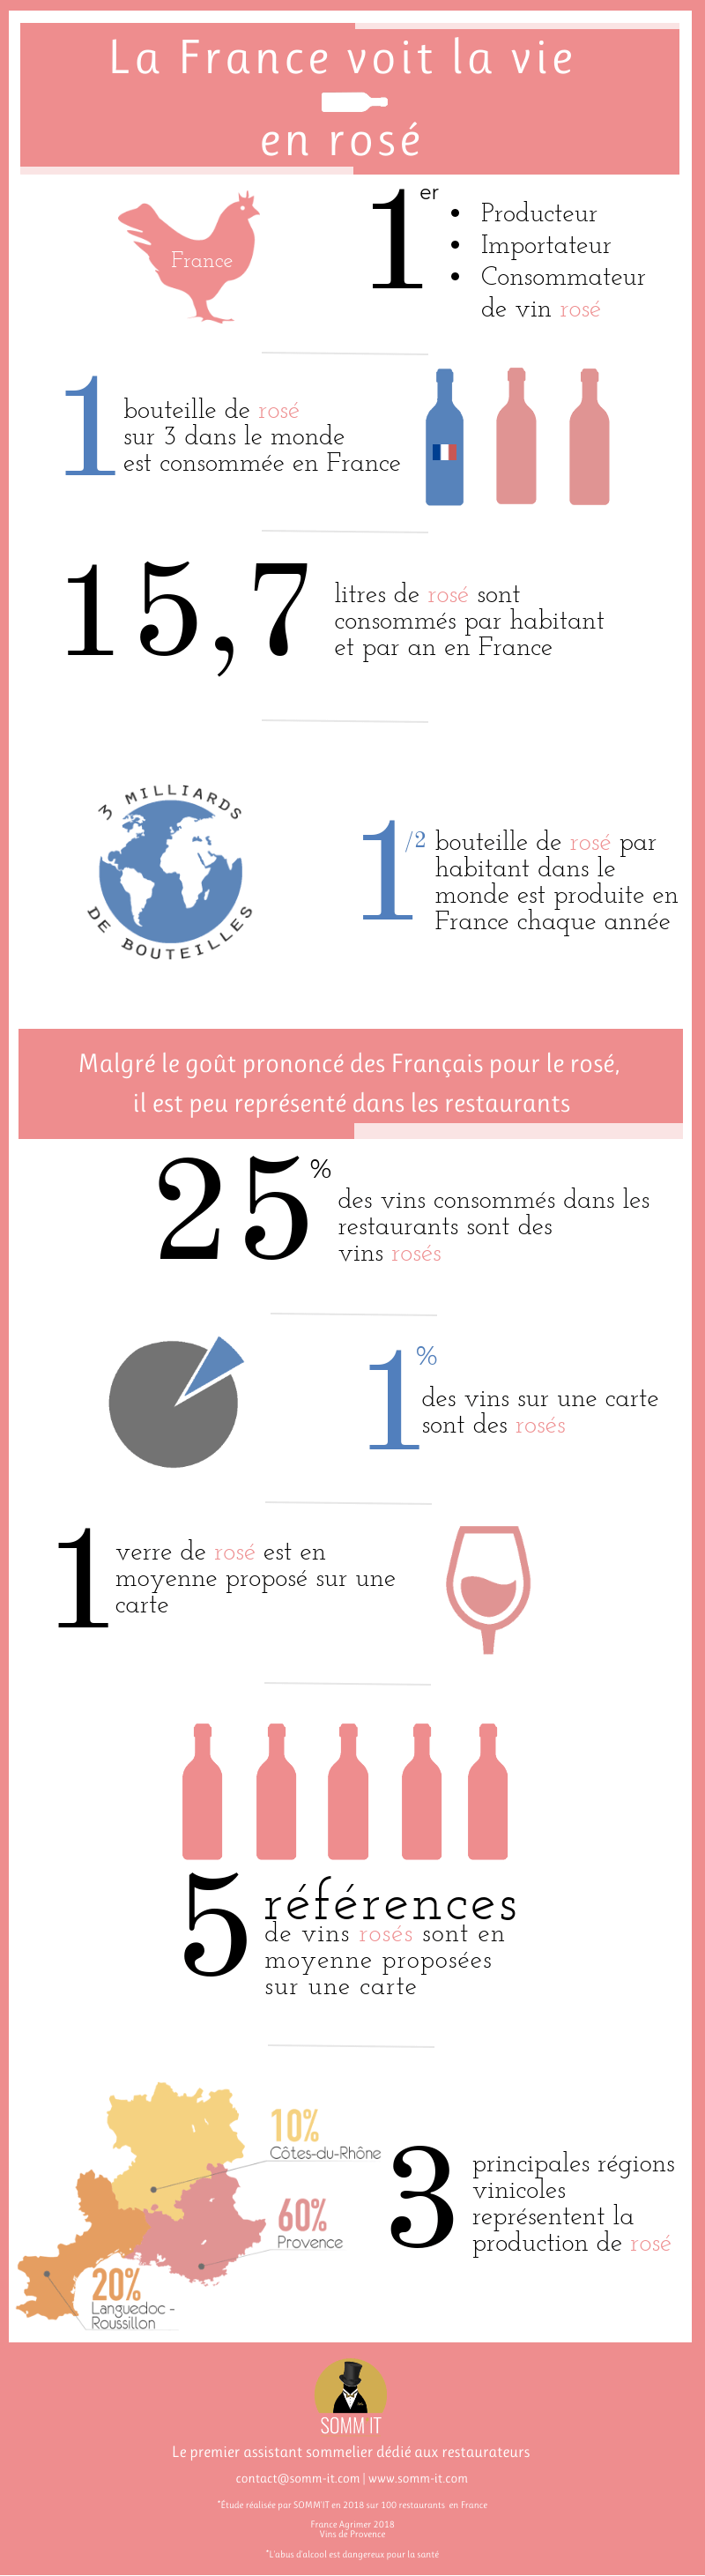 Les Français et le vin rosé